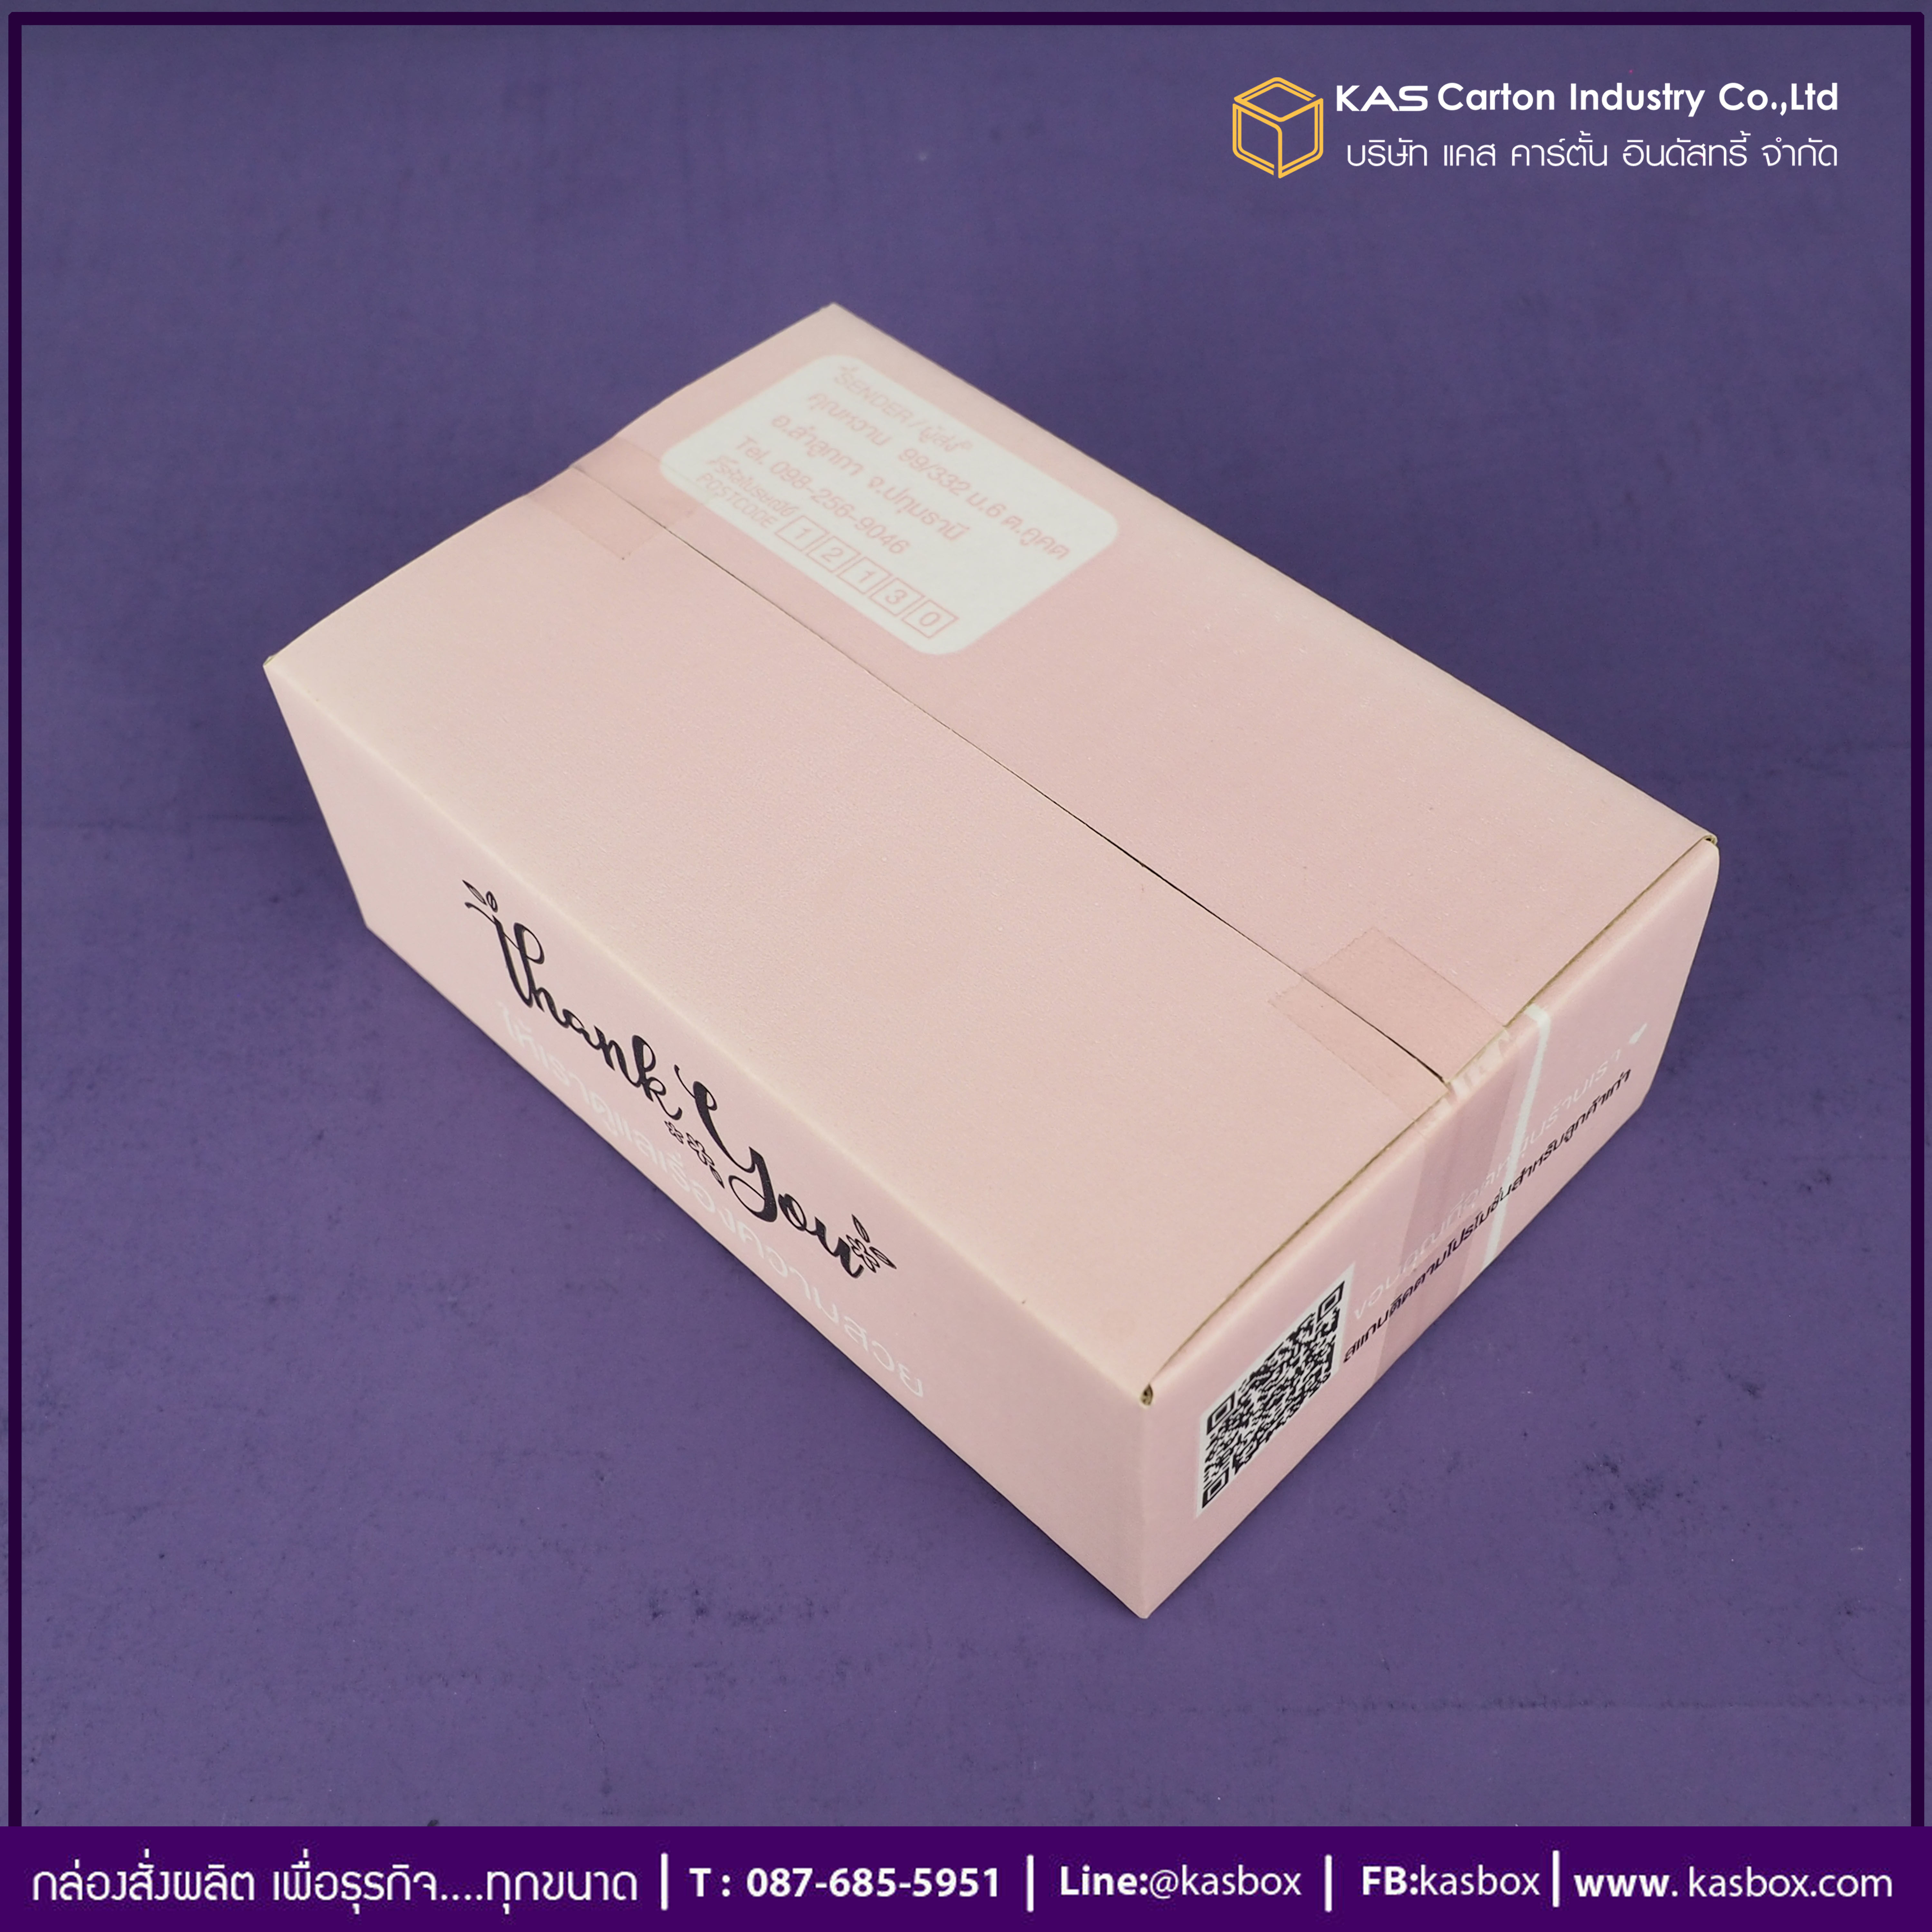 กล่องลูกฟูก สำเร็จรูป และ สั่งผลิต กล่องผลไม้  กล่องกระดาษลูกฟูก SME กล่องบรรจุ เครื่องสำอางค์